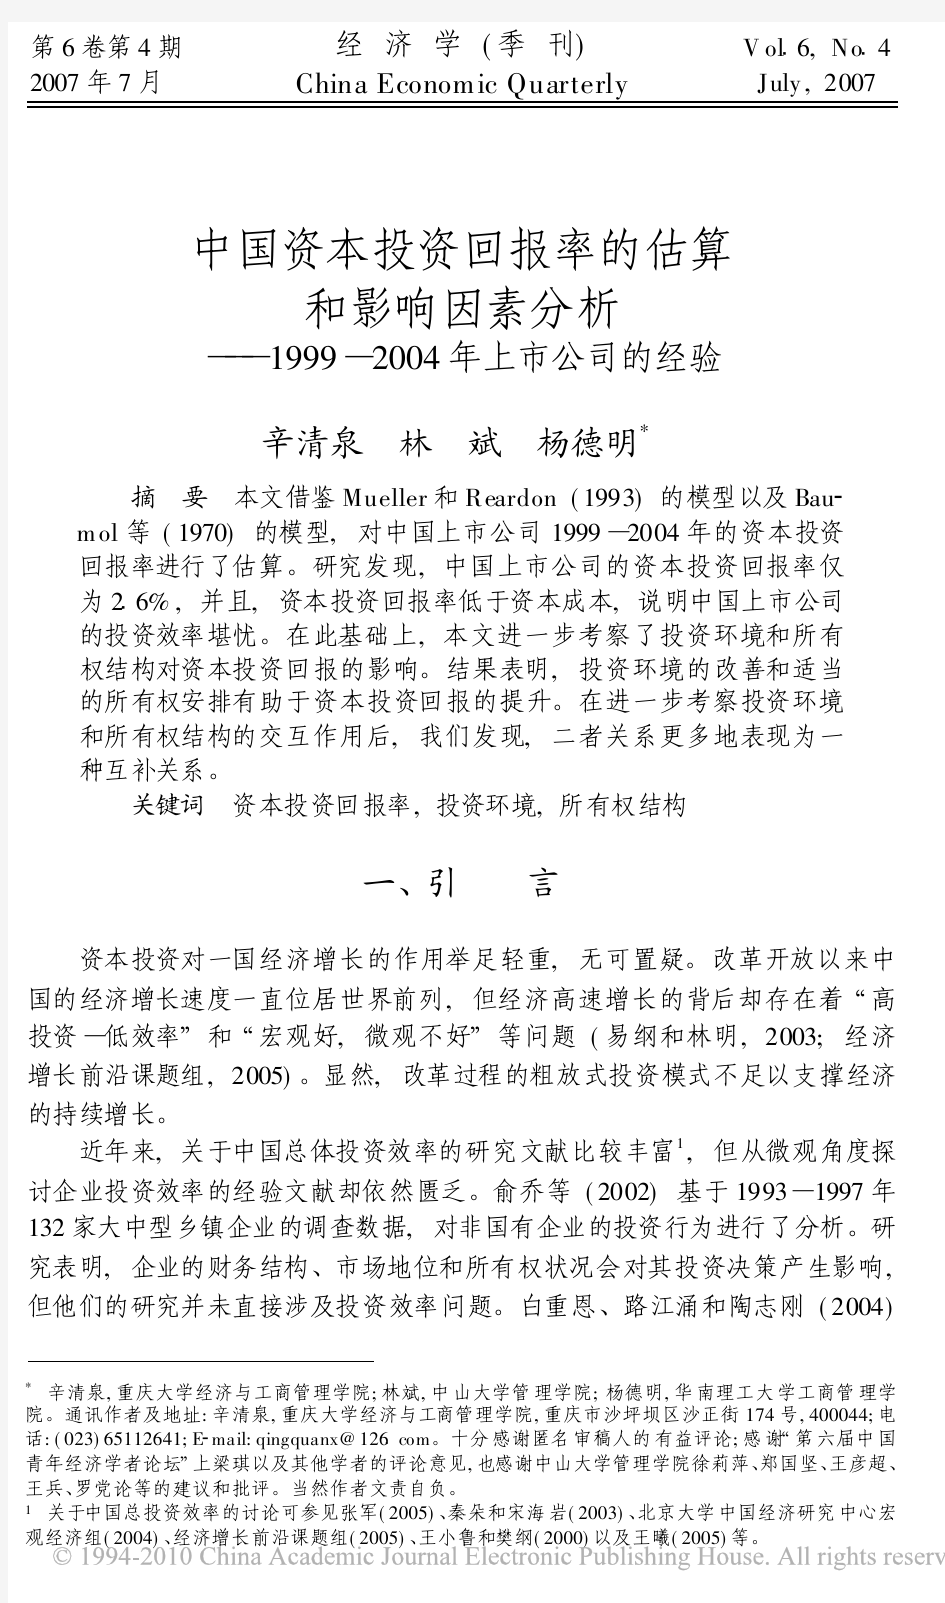 中国资本投资回报率的估算和影响因素分析_1999_2004年上市公司的经验